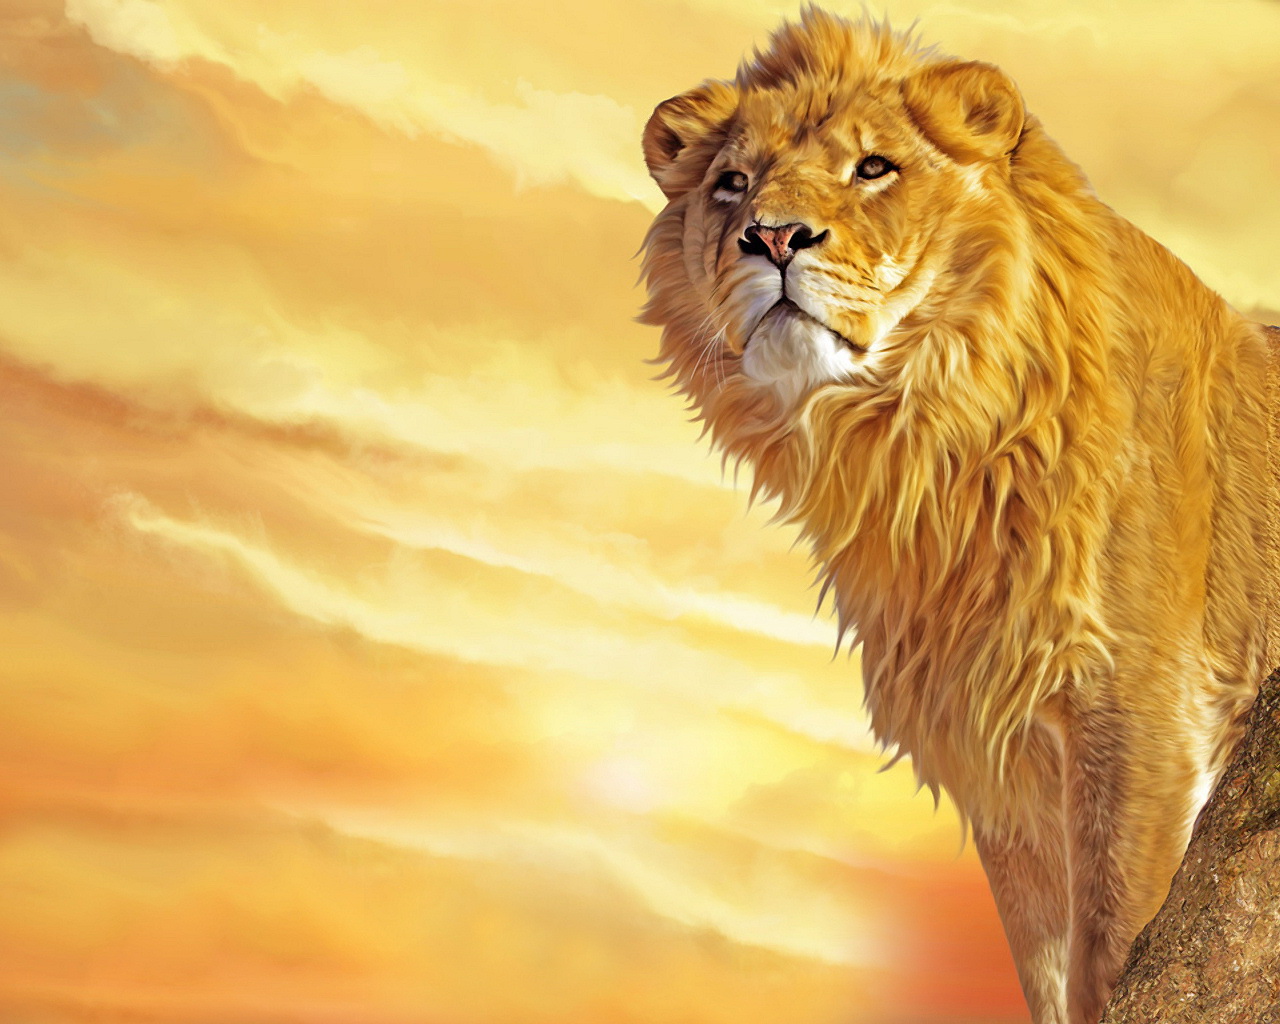 Fierce Lion Wallpapers